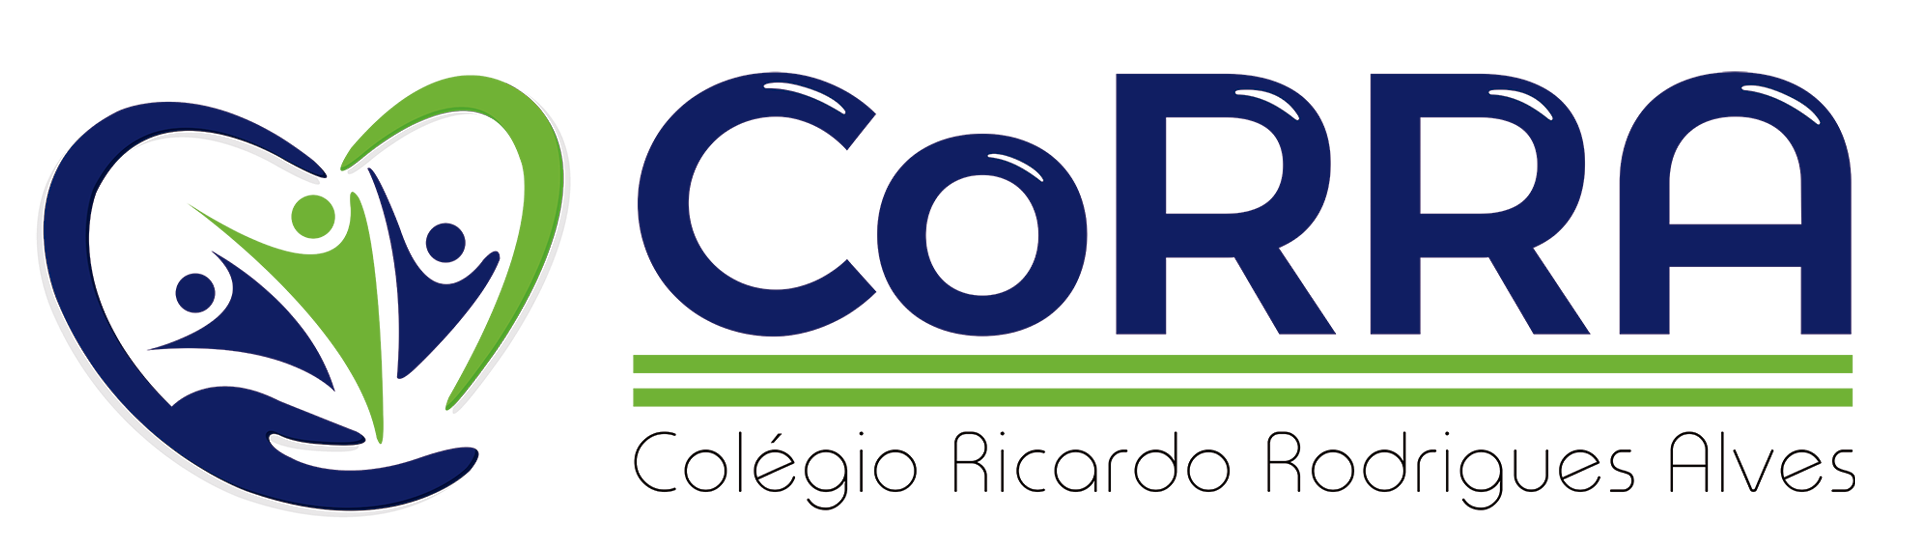 Logo_Colegio_rodrigues_alves Grande (DropShadow)